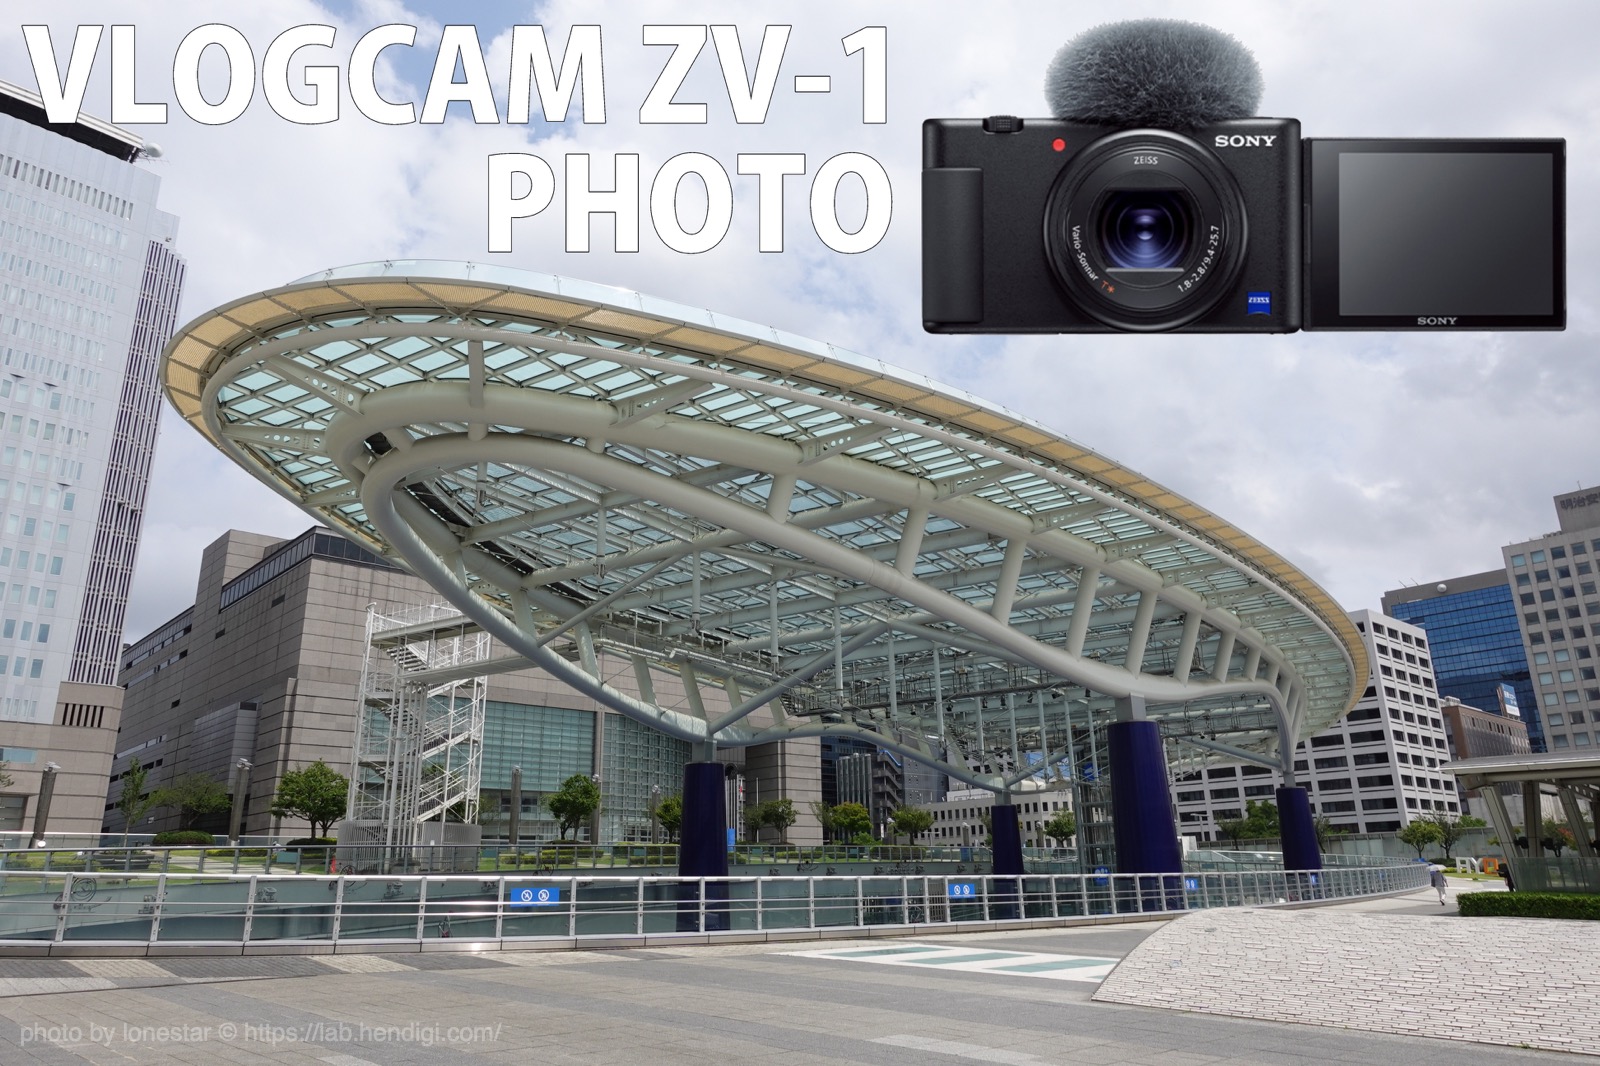 【ミニレビュー】VLOGCAM ZV-1で写真を撮ってみた。気軽にパパッとキレイな写真が撮れて便利！